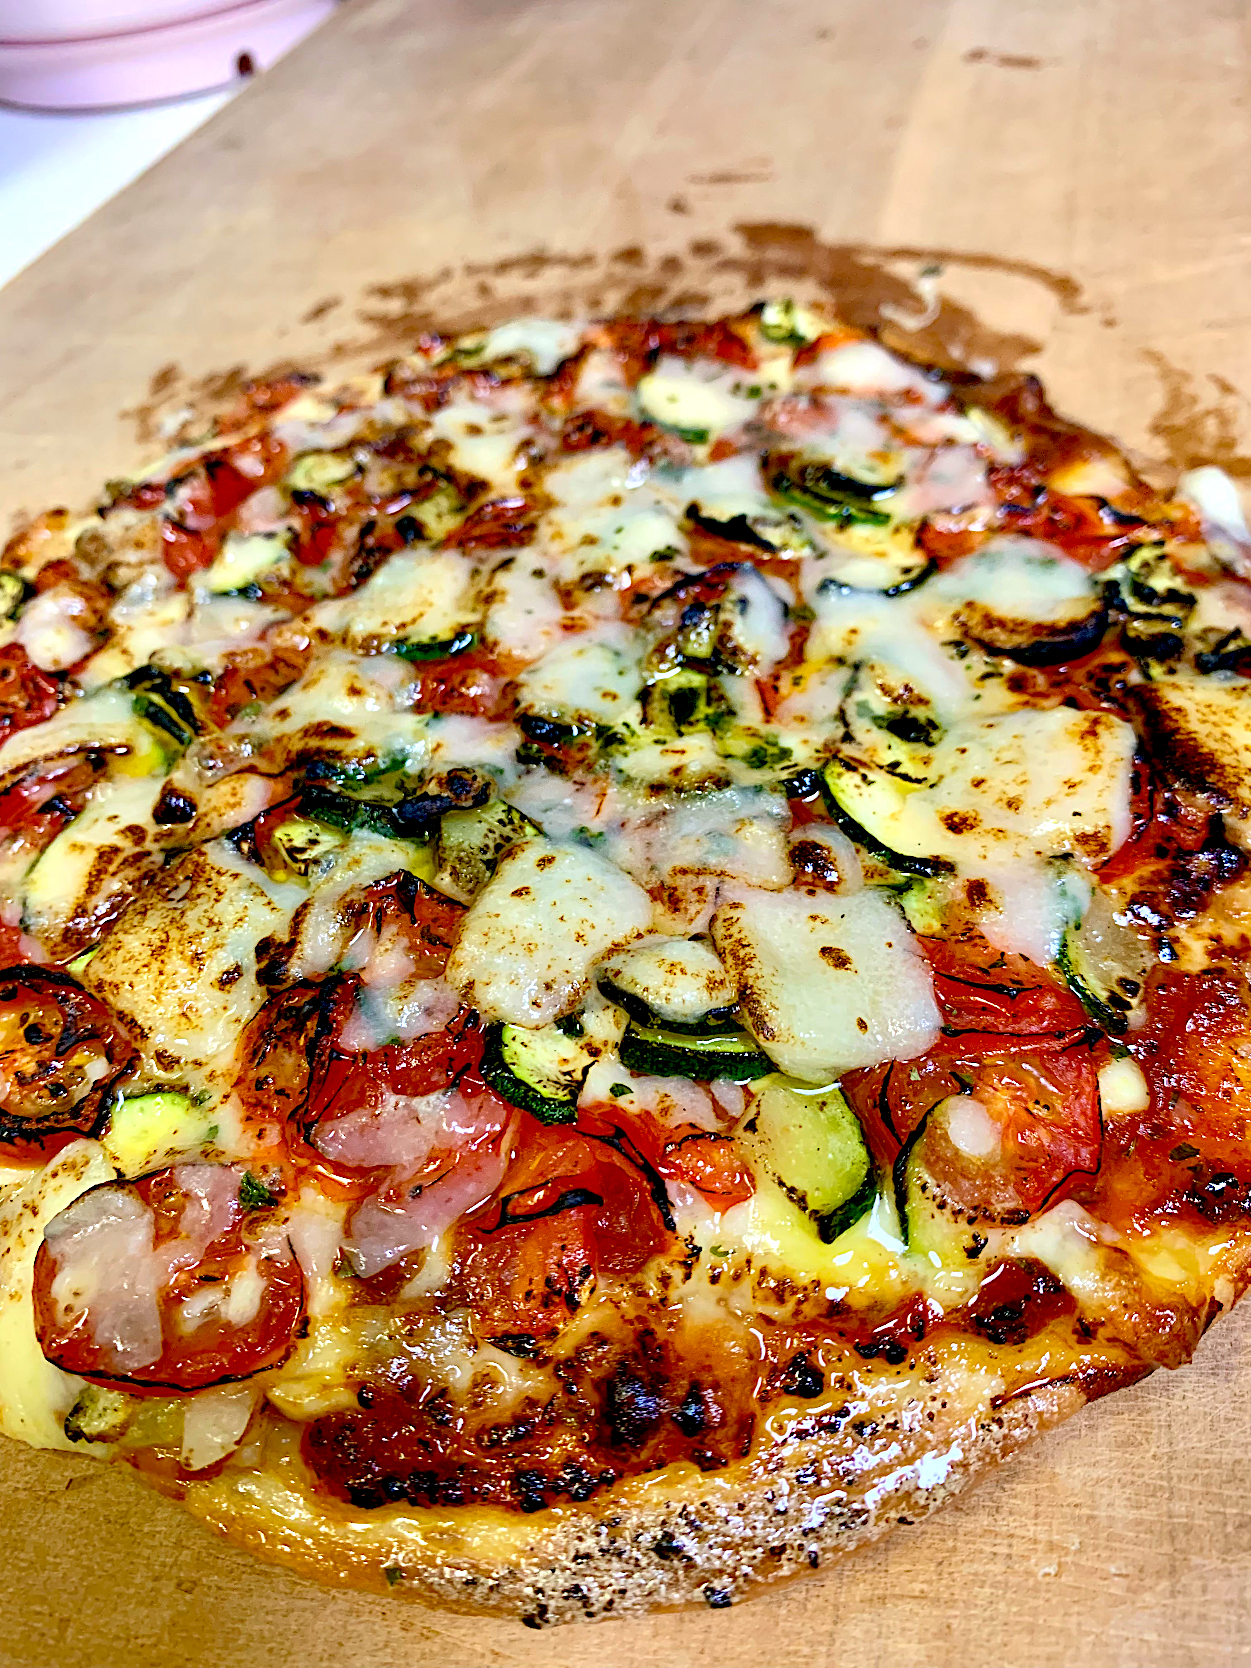 Sourdough Pizza Topped With Herbed Tomato, Zucchini & Grana Padano Cheese